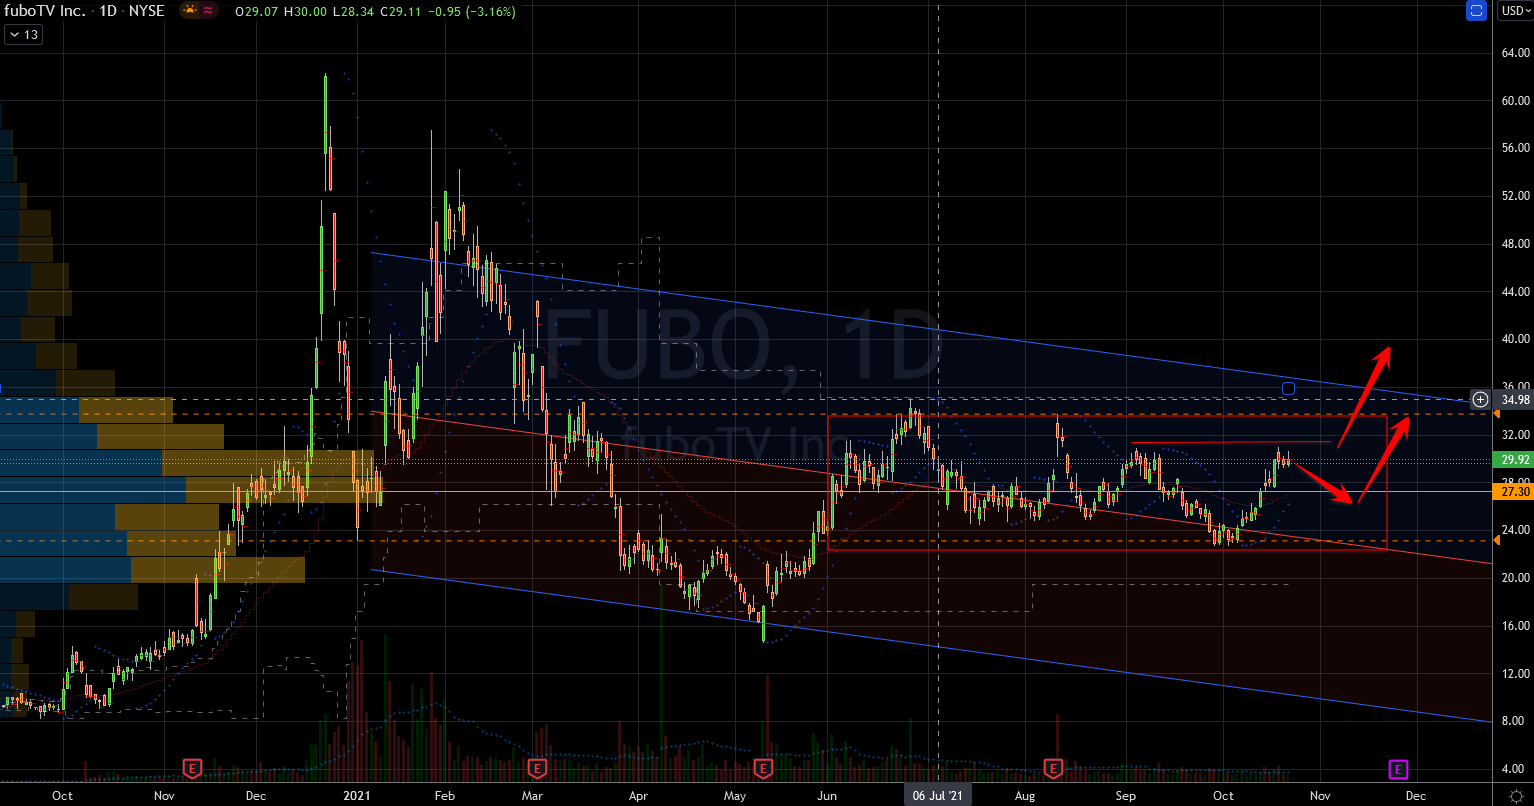 FUBO Stock Showing Consolidation Range